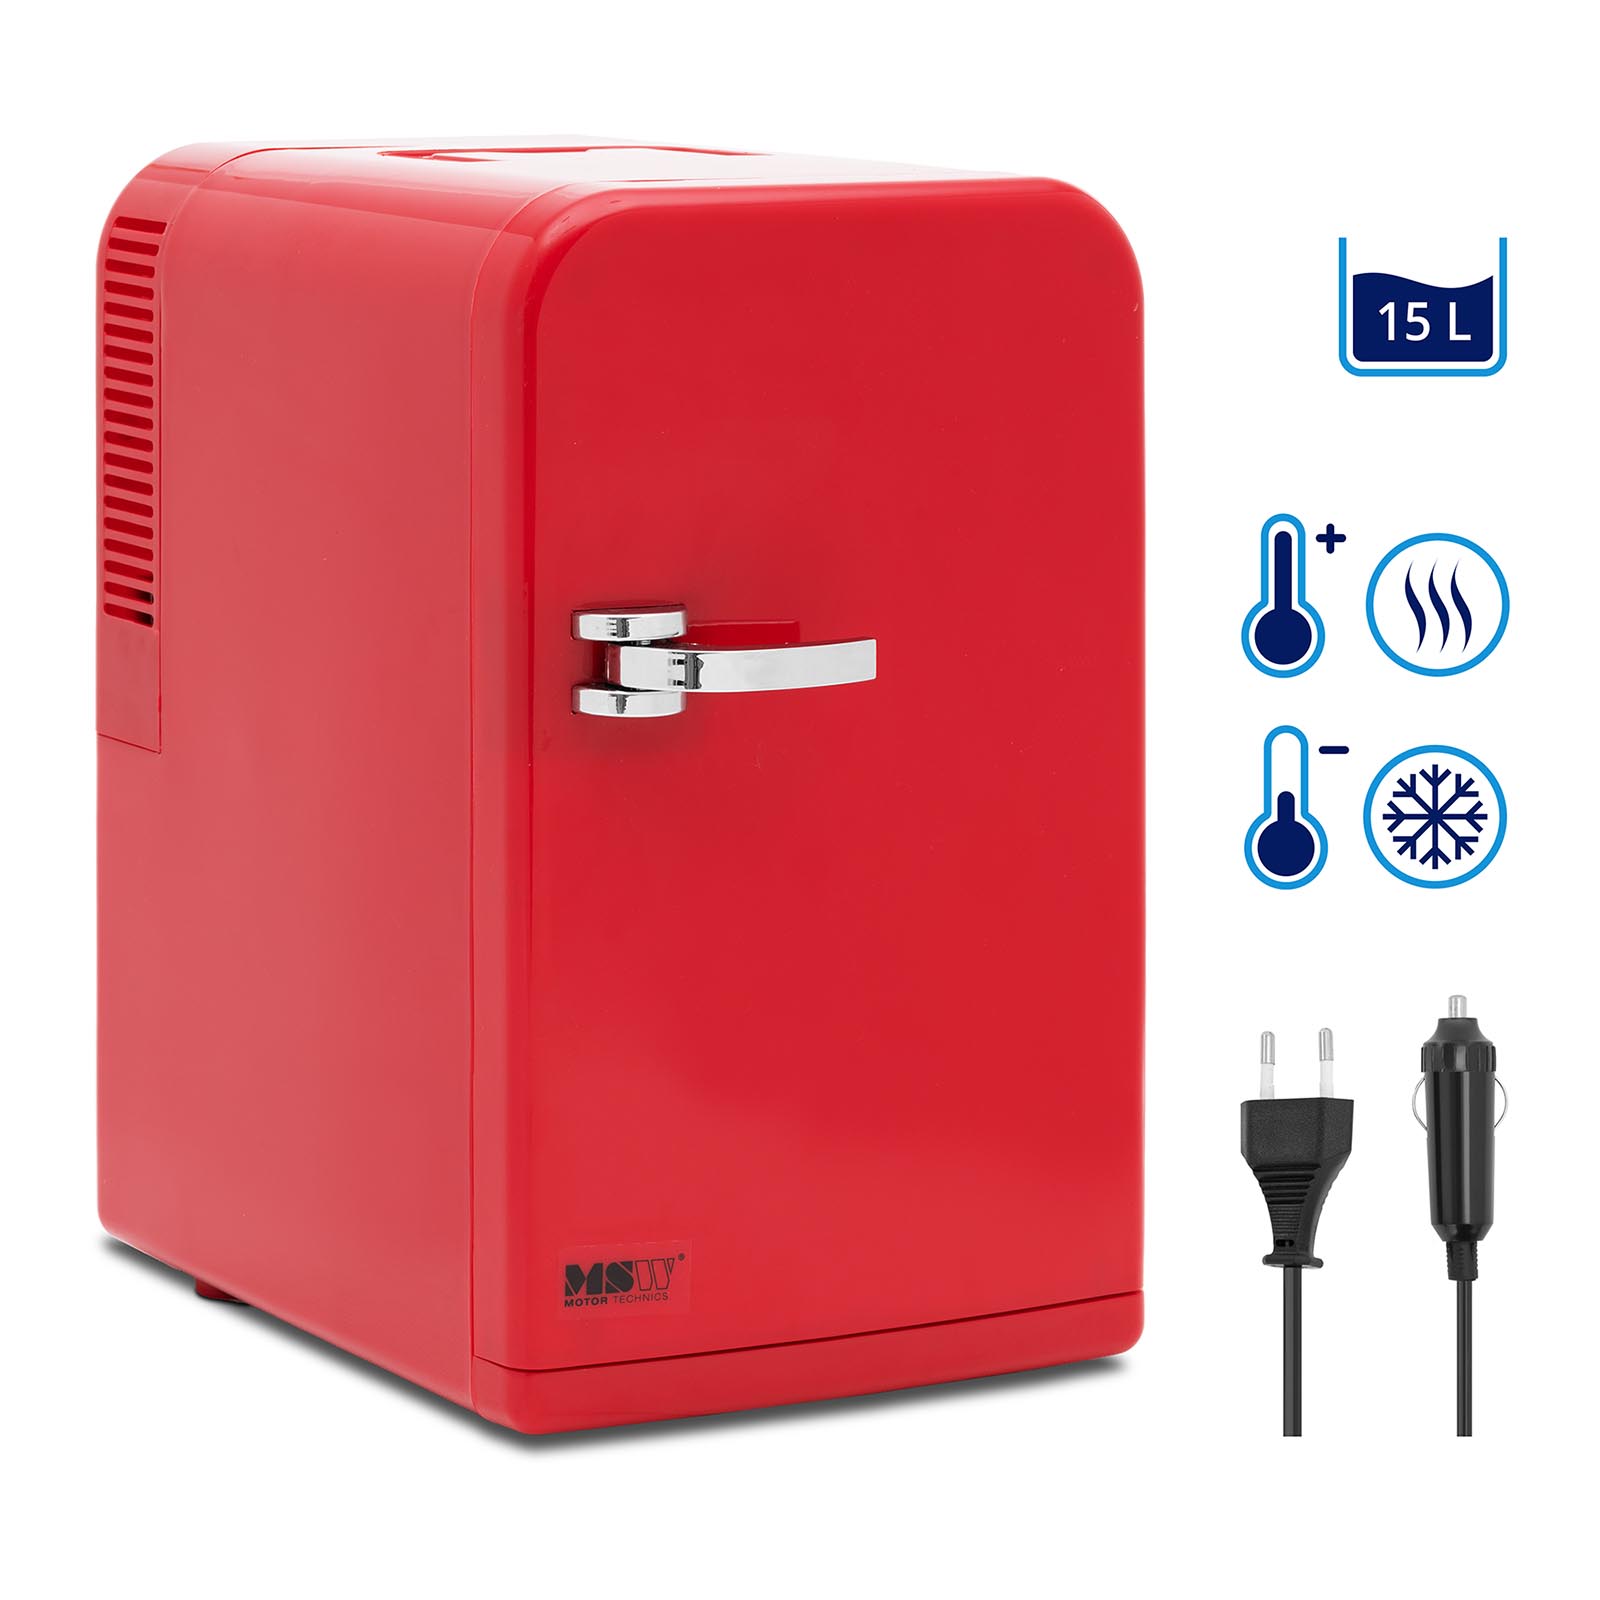 Μίνι ψυγείο 12 V / 230 V - Συσκευή 2 σε 1 με λειτουργία διατήρησης της θερμοκρασίας - 15 L - Κόκκινο